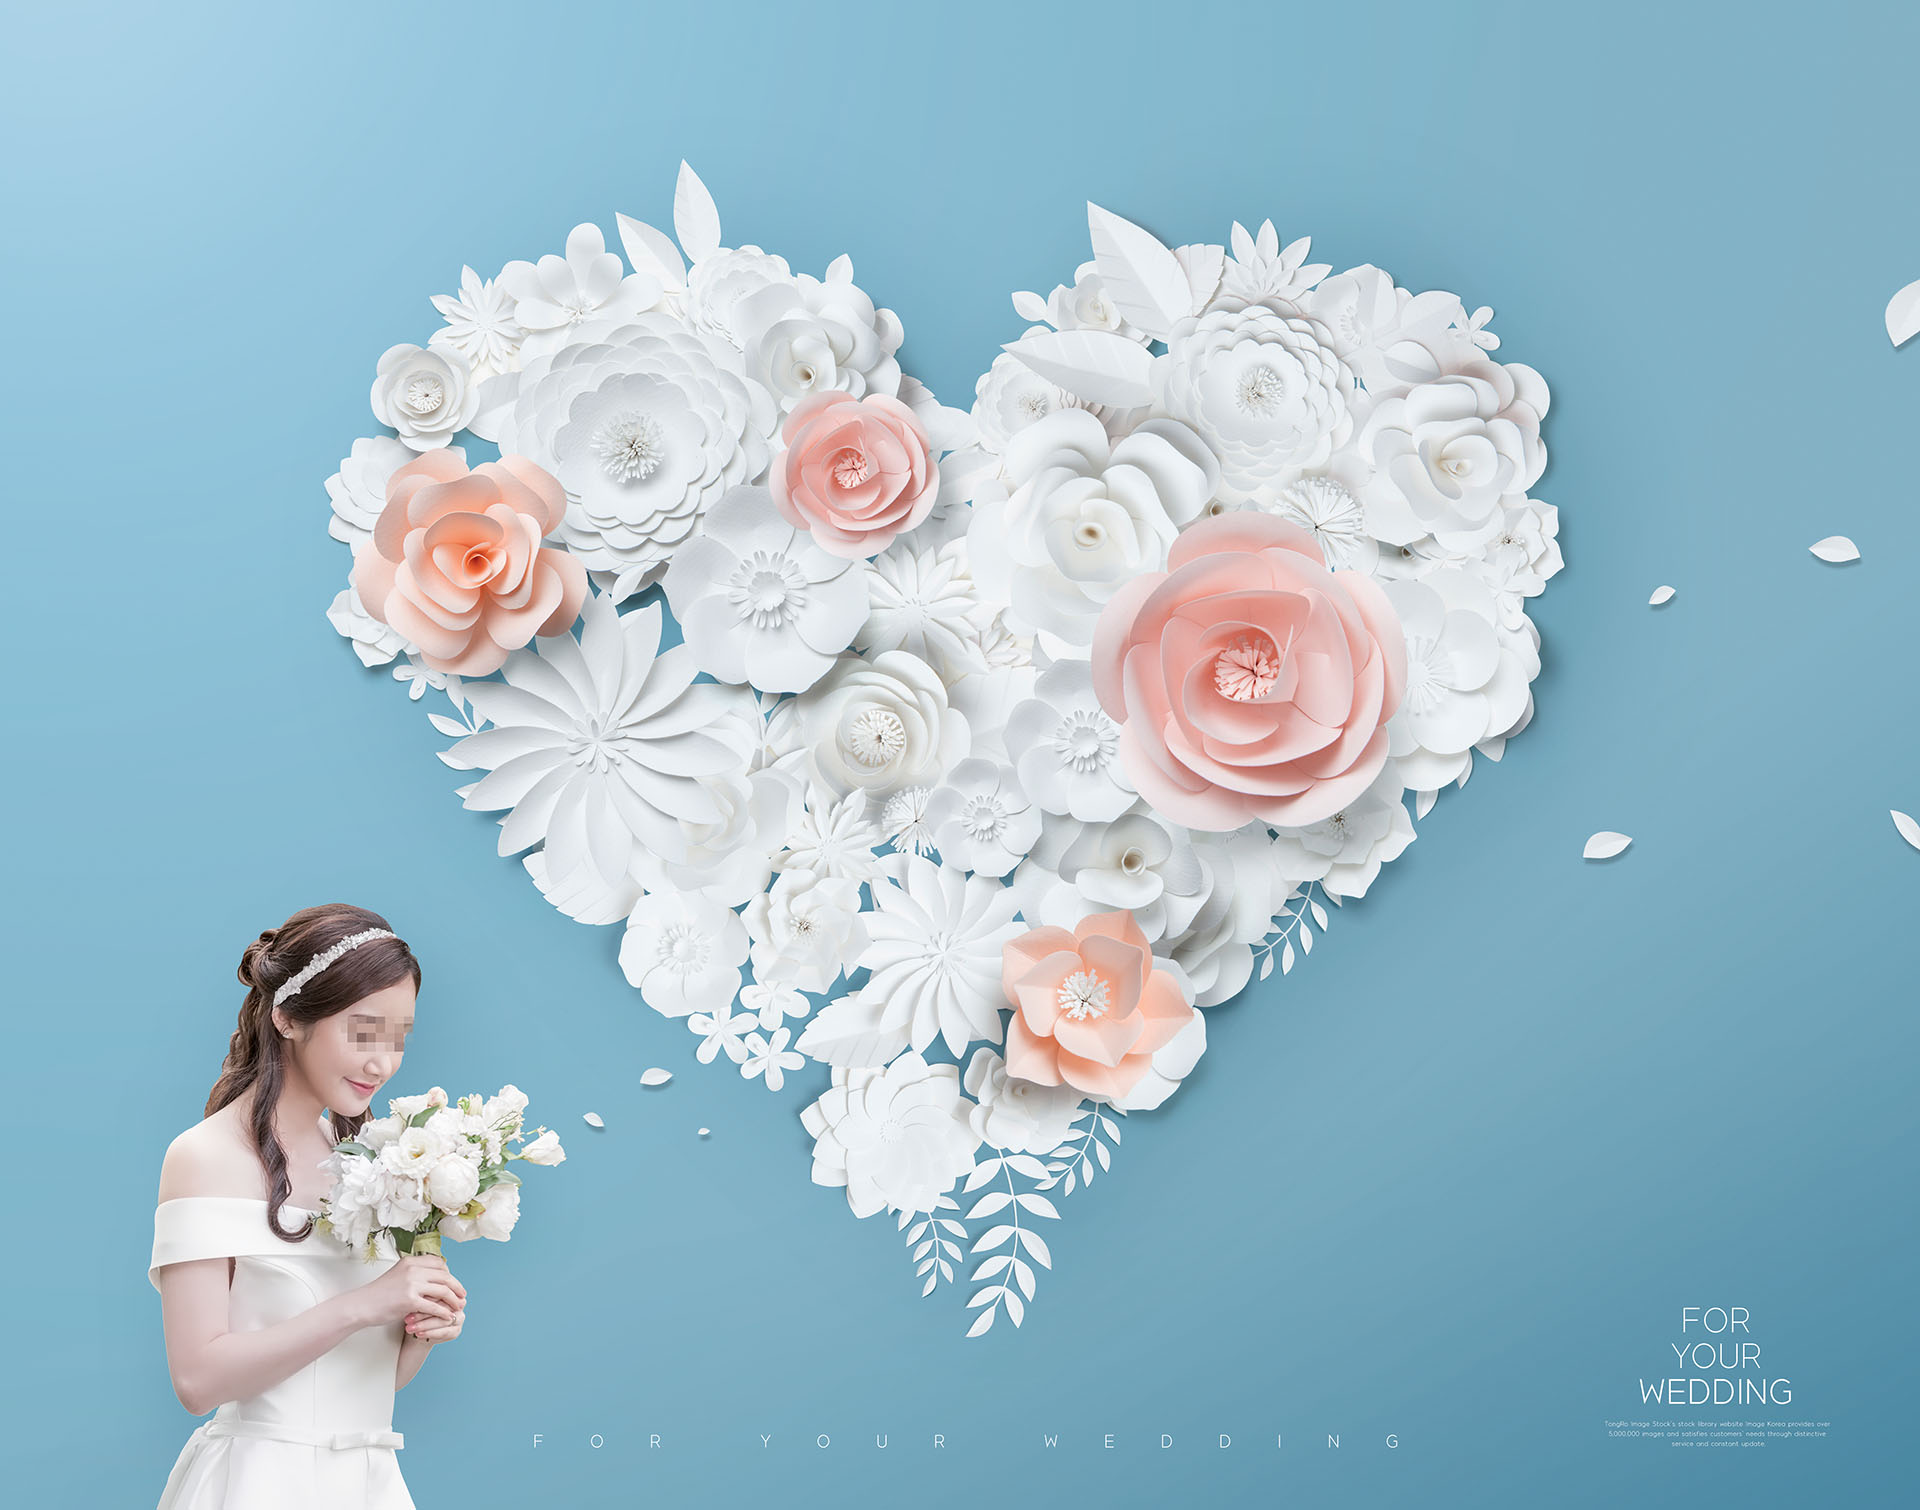 婚礼花卉创意场景海报PSD素材模板下载插图(6)